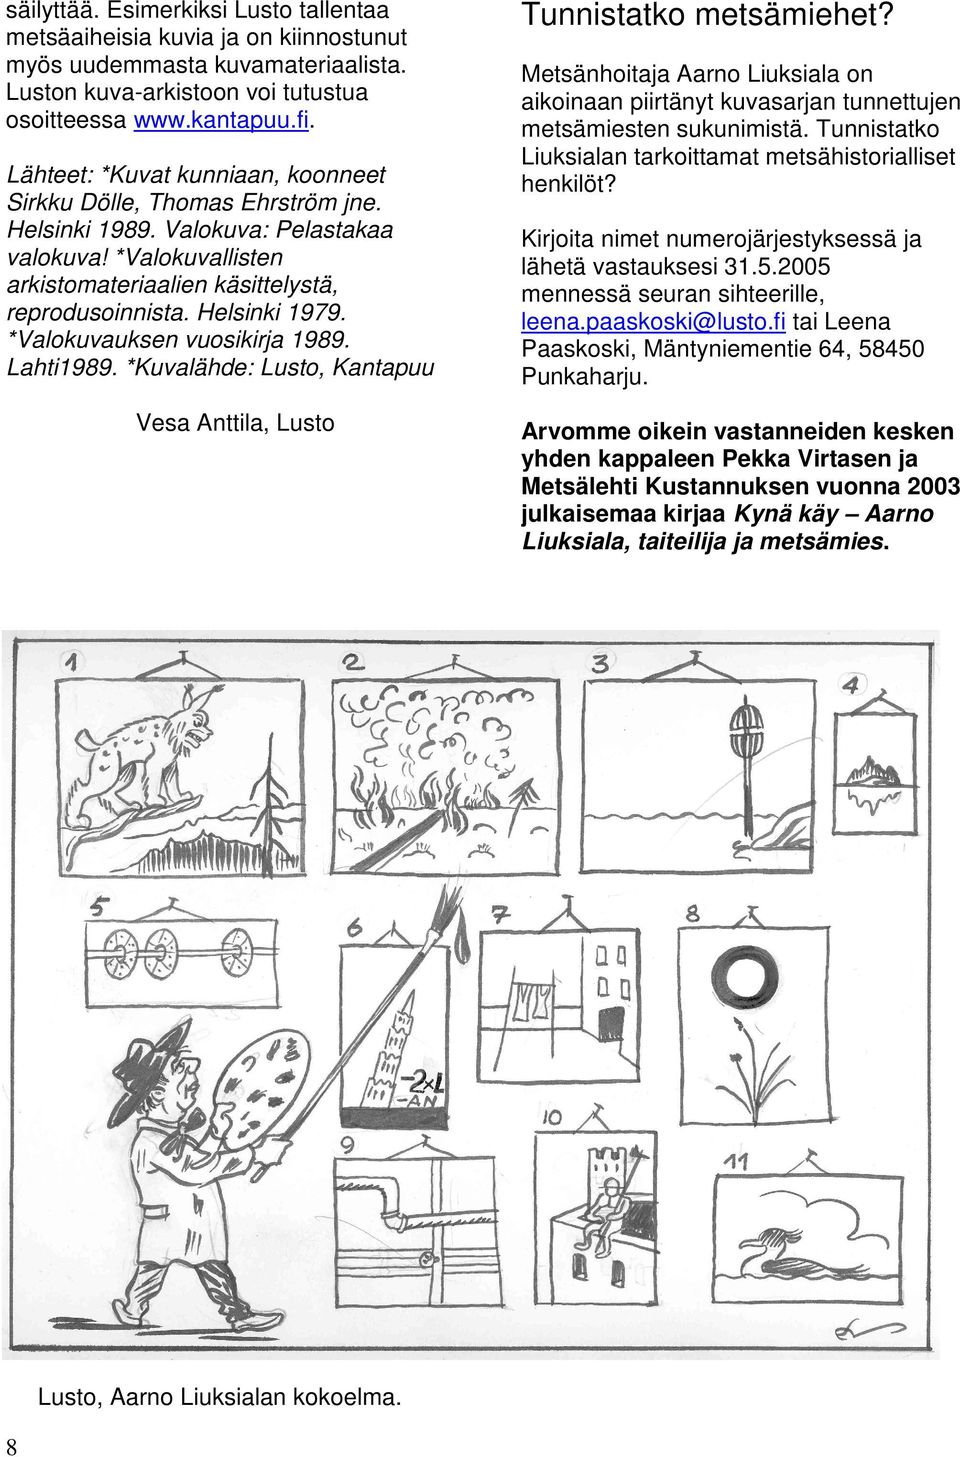 *Valokuvauksen vuosikirja 1989. Lahti1989. *Kuvalähde: Lusto, Kantapuu Vesa Anttila, Lusto Lusto, Aarno Liuksialan kokoelma. 8 Tunnistatko metsämiehet?